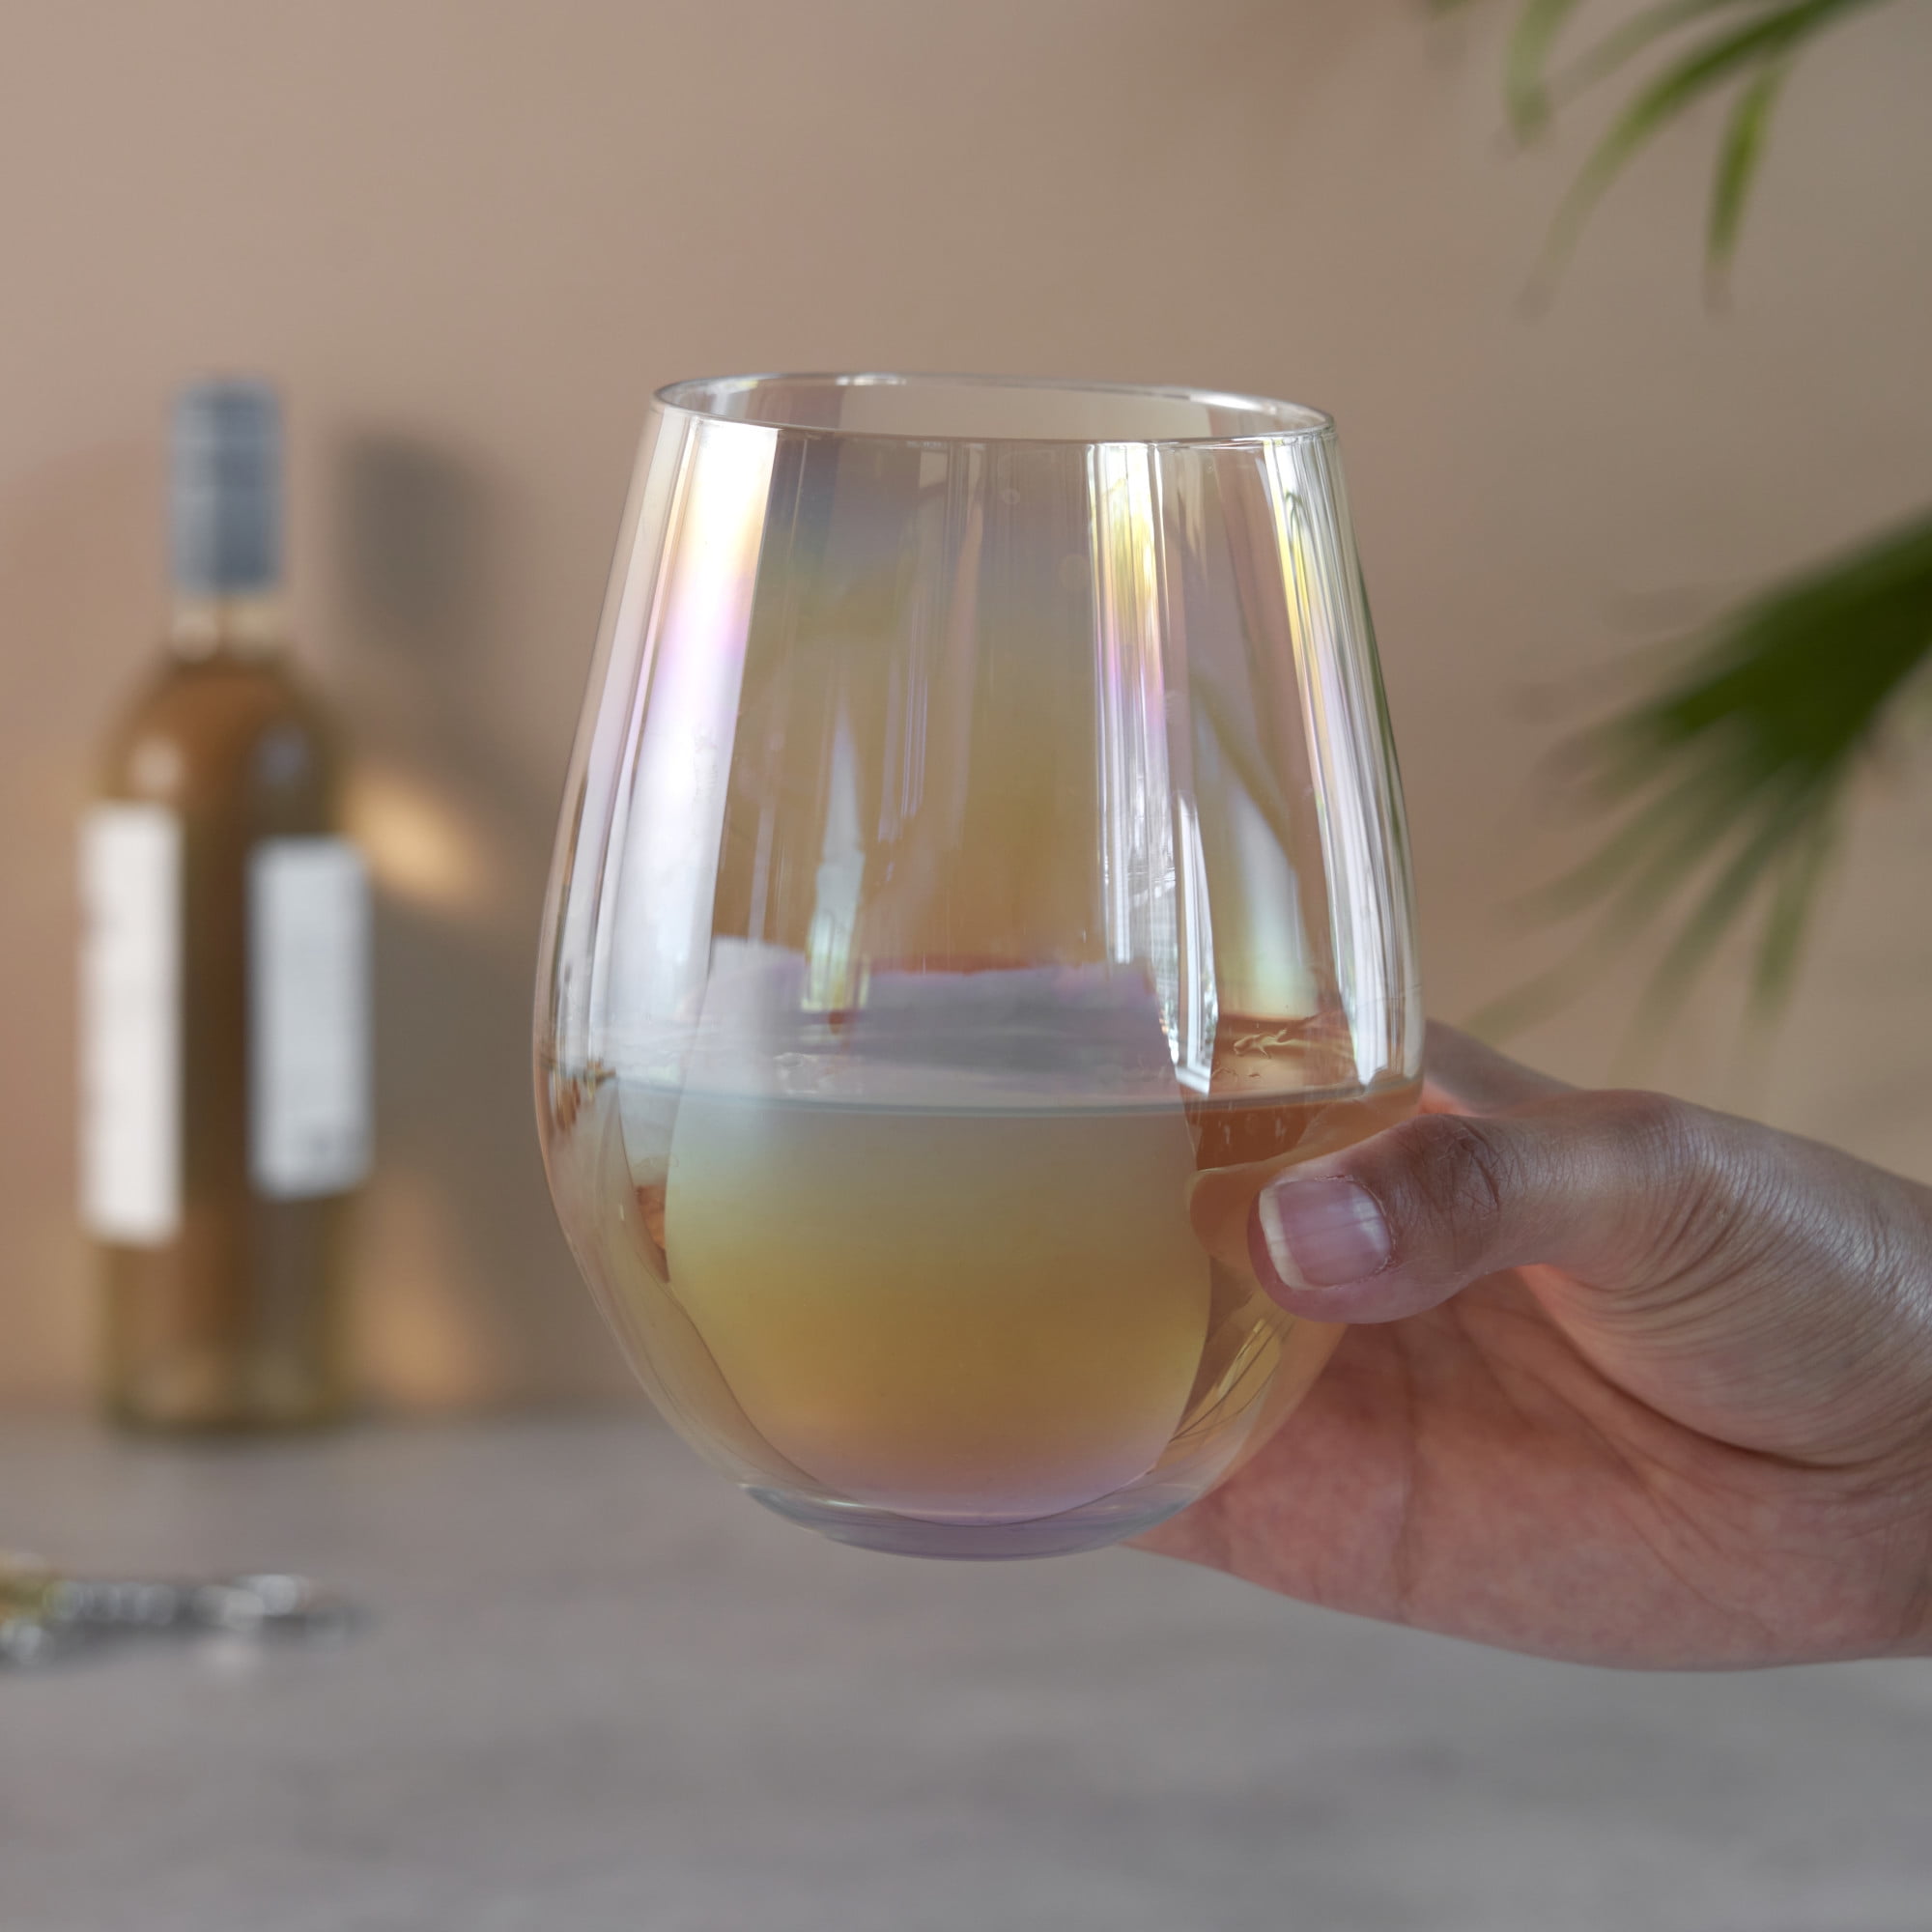 Colored Wine Glass – JUX•TA•POSH HOME